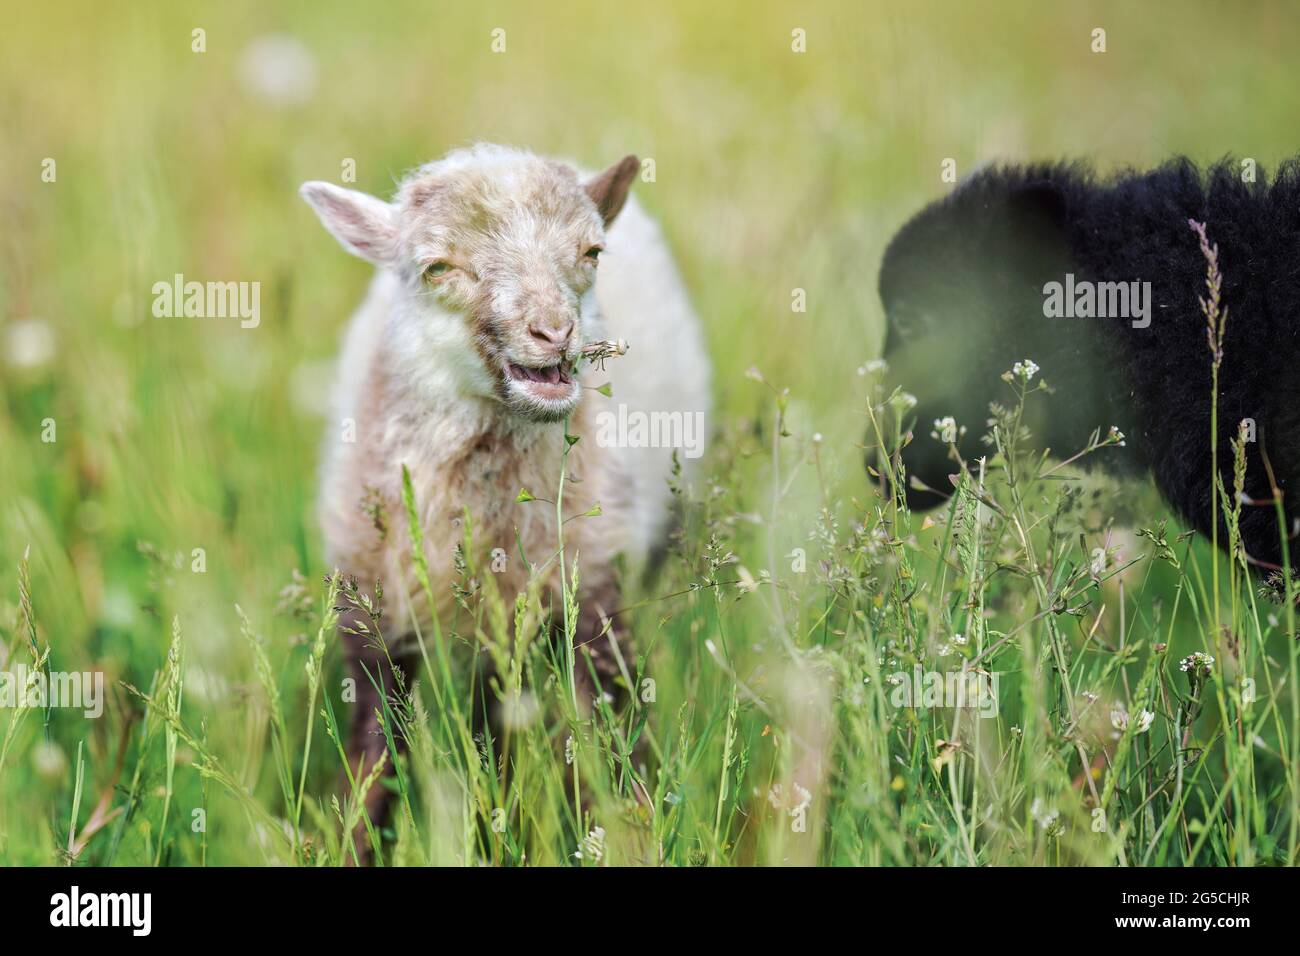 Un petit mouton ouessant (ou Ushant) qui broutage sur des tiges de pissenlit, un autre animal noir flou en premier plan près Banque D'Images